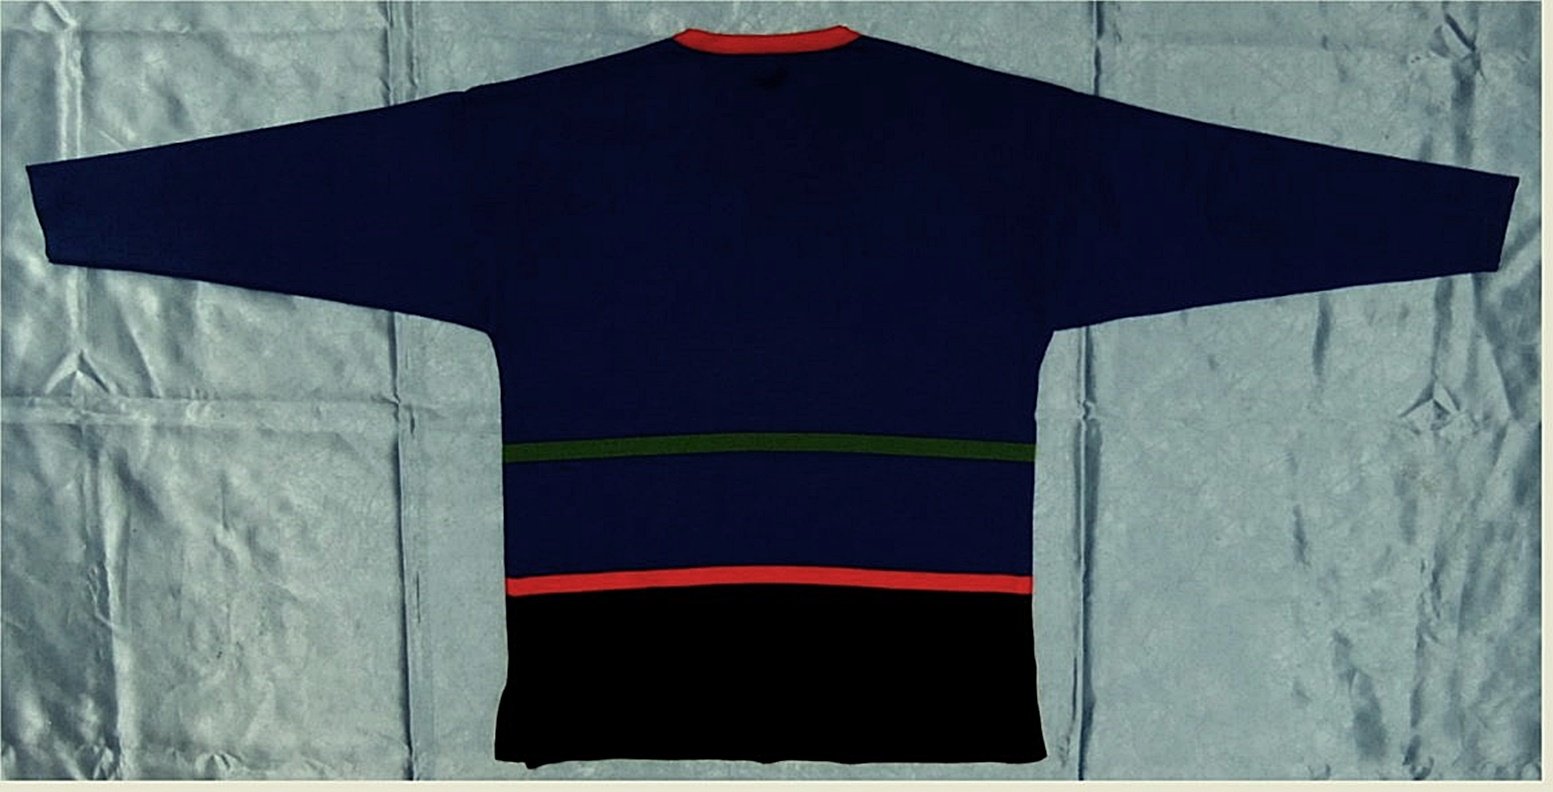 Pullover von Lucia - blau / grün-rot gestreift - Größe 40